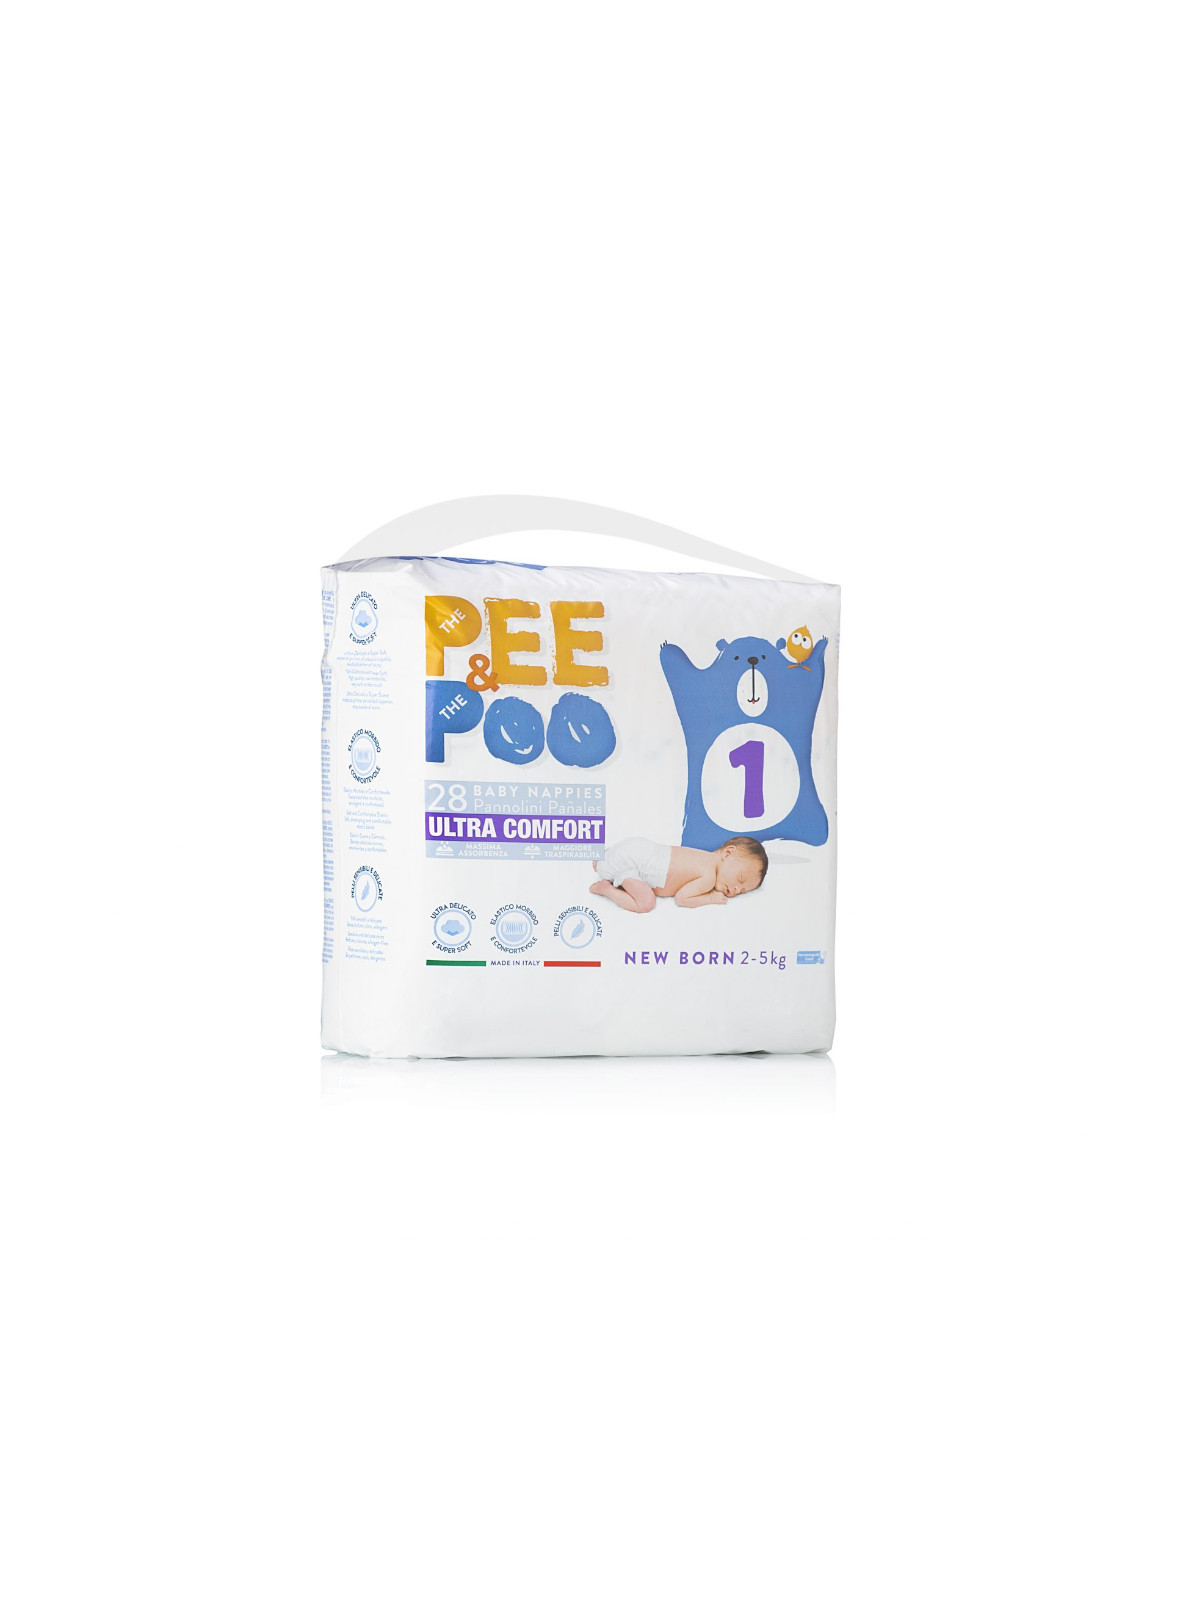 Pee&poo new born taglia 1 - 28 pz